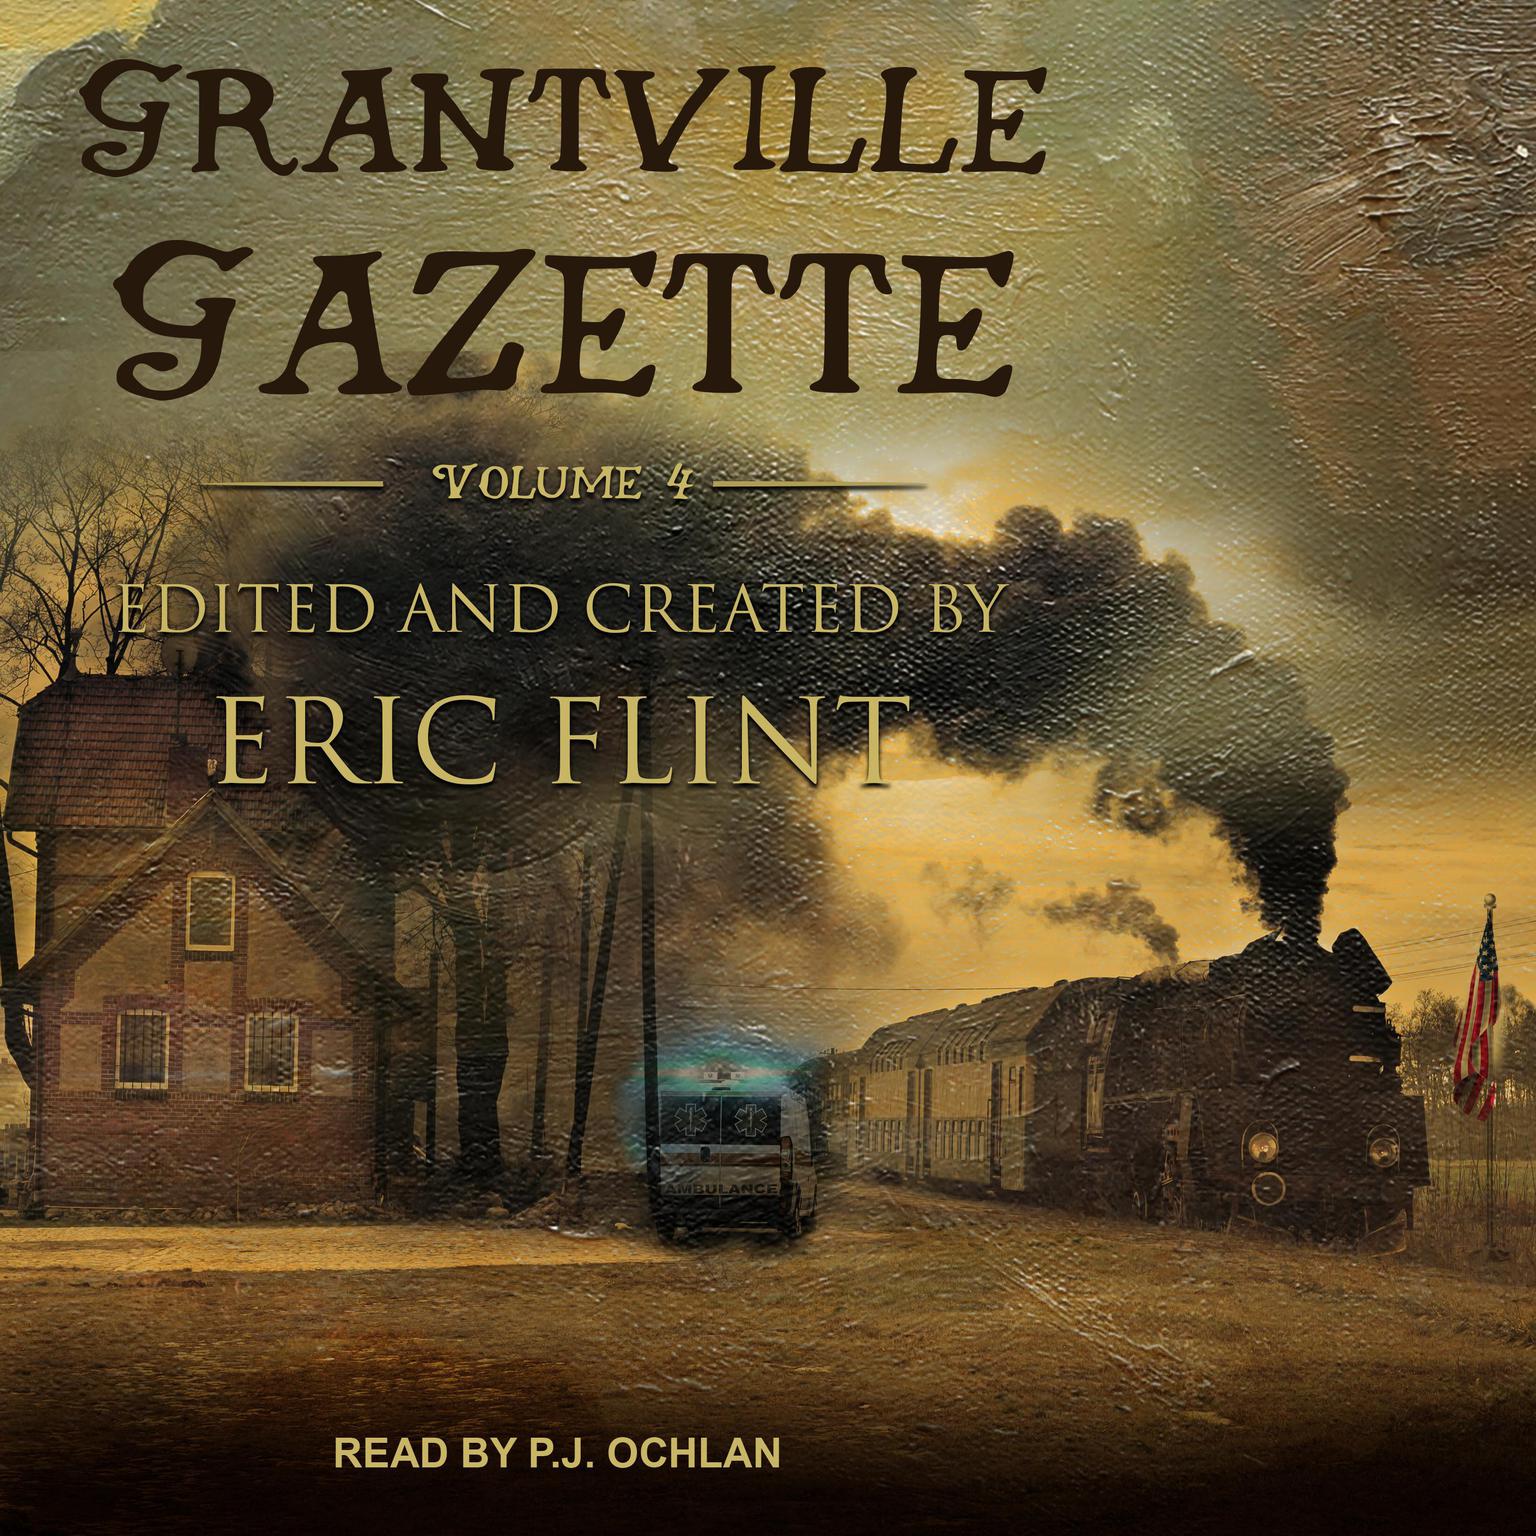 Grantville Gazette, Volume IV Audiobook, by Eric Flint